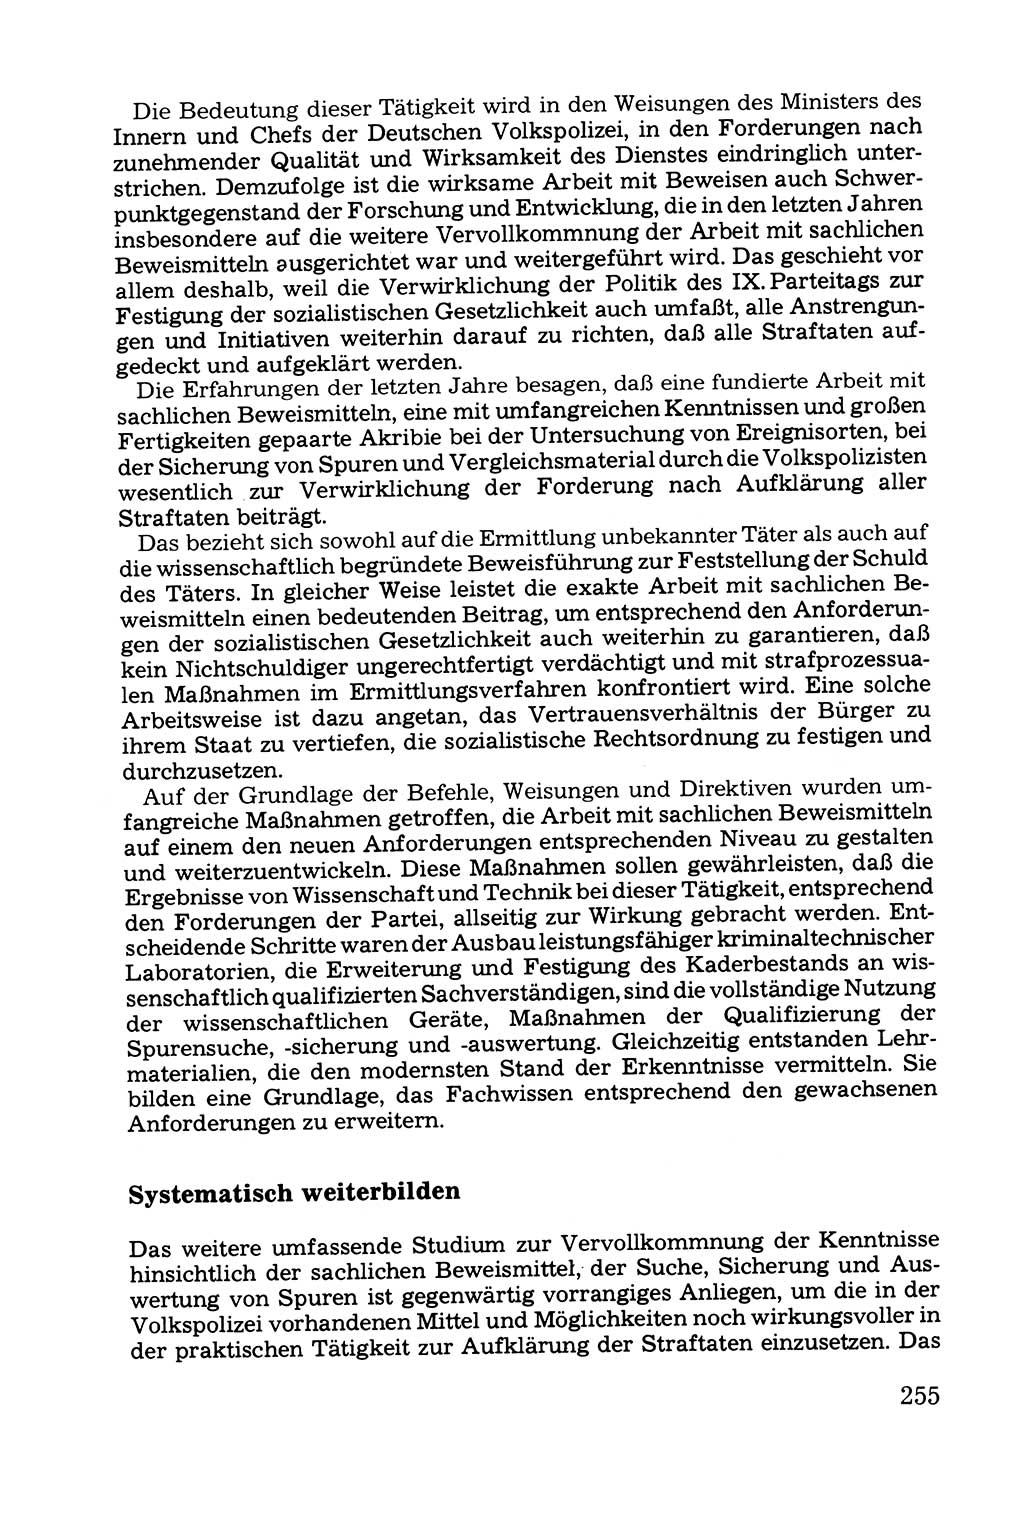 Grundfragen der Beweisführung im Ermittlungsverfahren [Deutsche Demokratische Republik (DDR)] 1980, Seite 255 (Bws.-Fhrg. EV DDR 1980, S. 255)